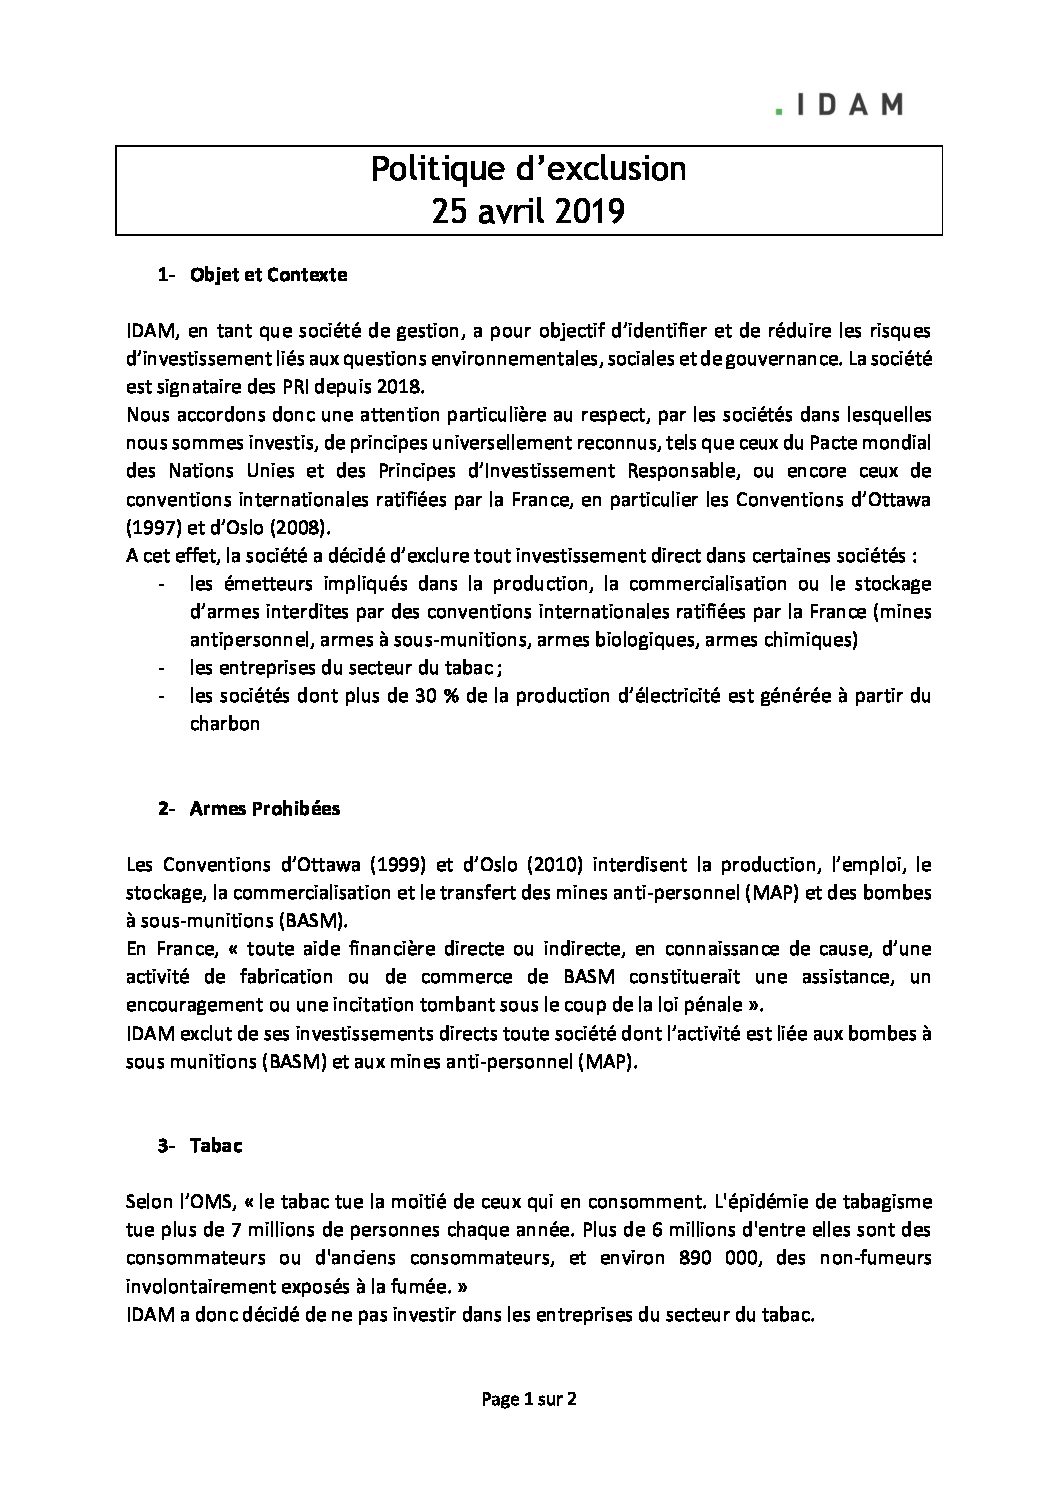 20190425-Politique-exclusion-1-pdf